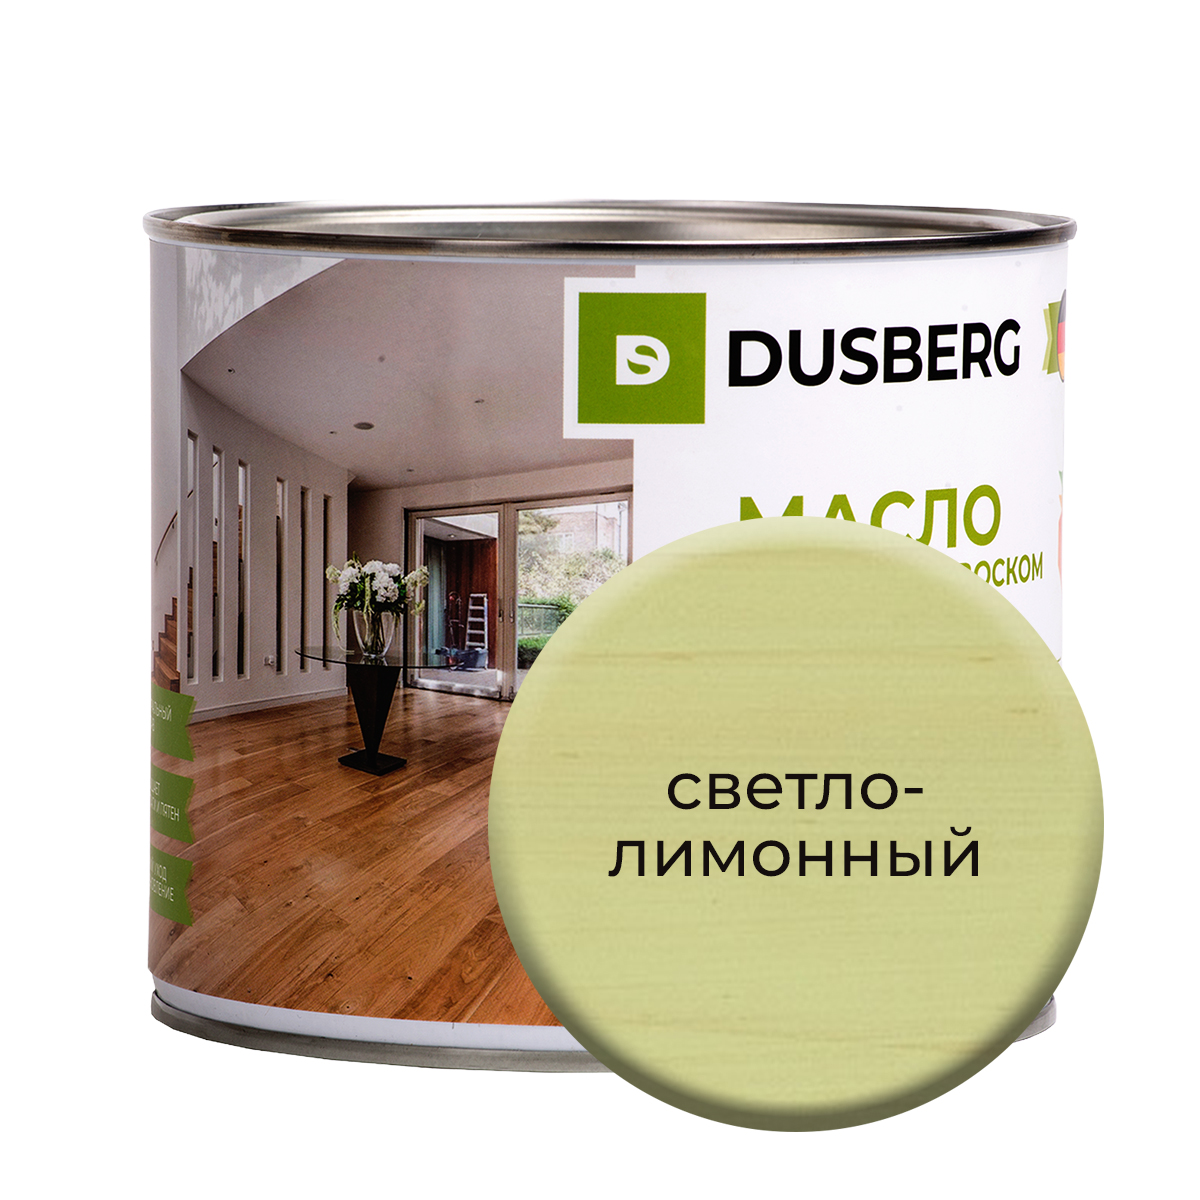 Масло Dusberg для стен на бесцветной основе, 750 мл Светло-лимонный масло dusberg для дерева на бесцветной основе 750 мл голдохор